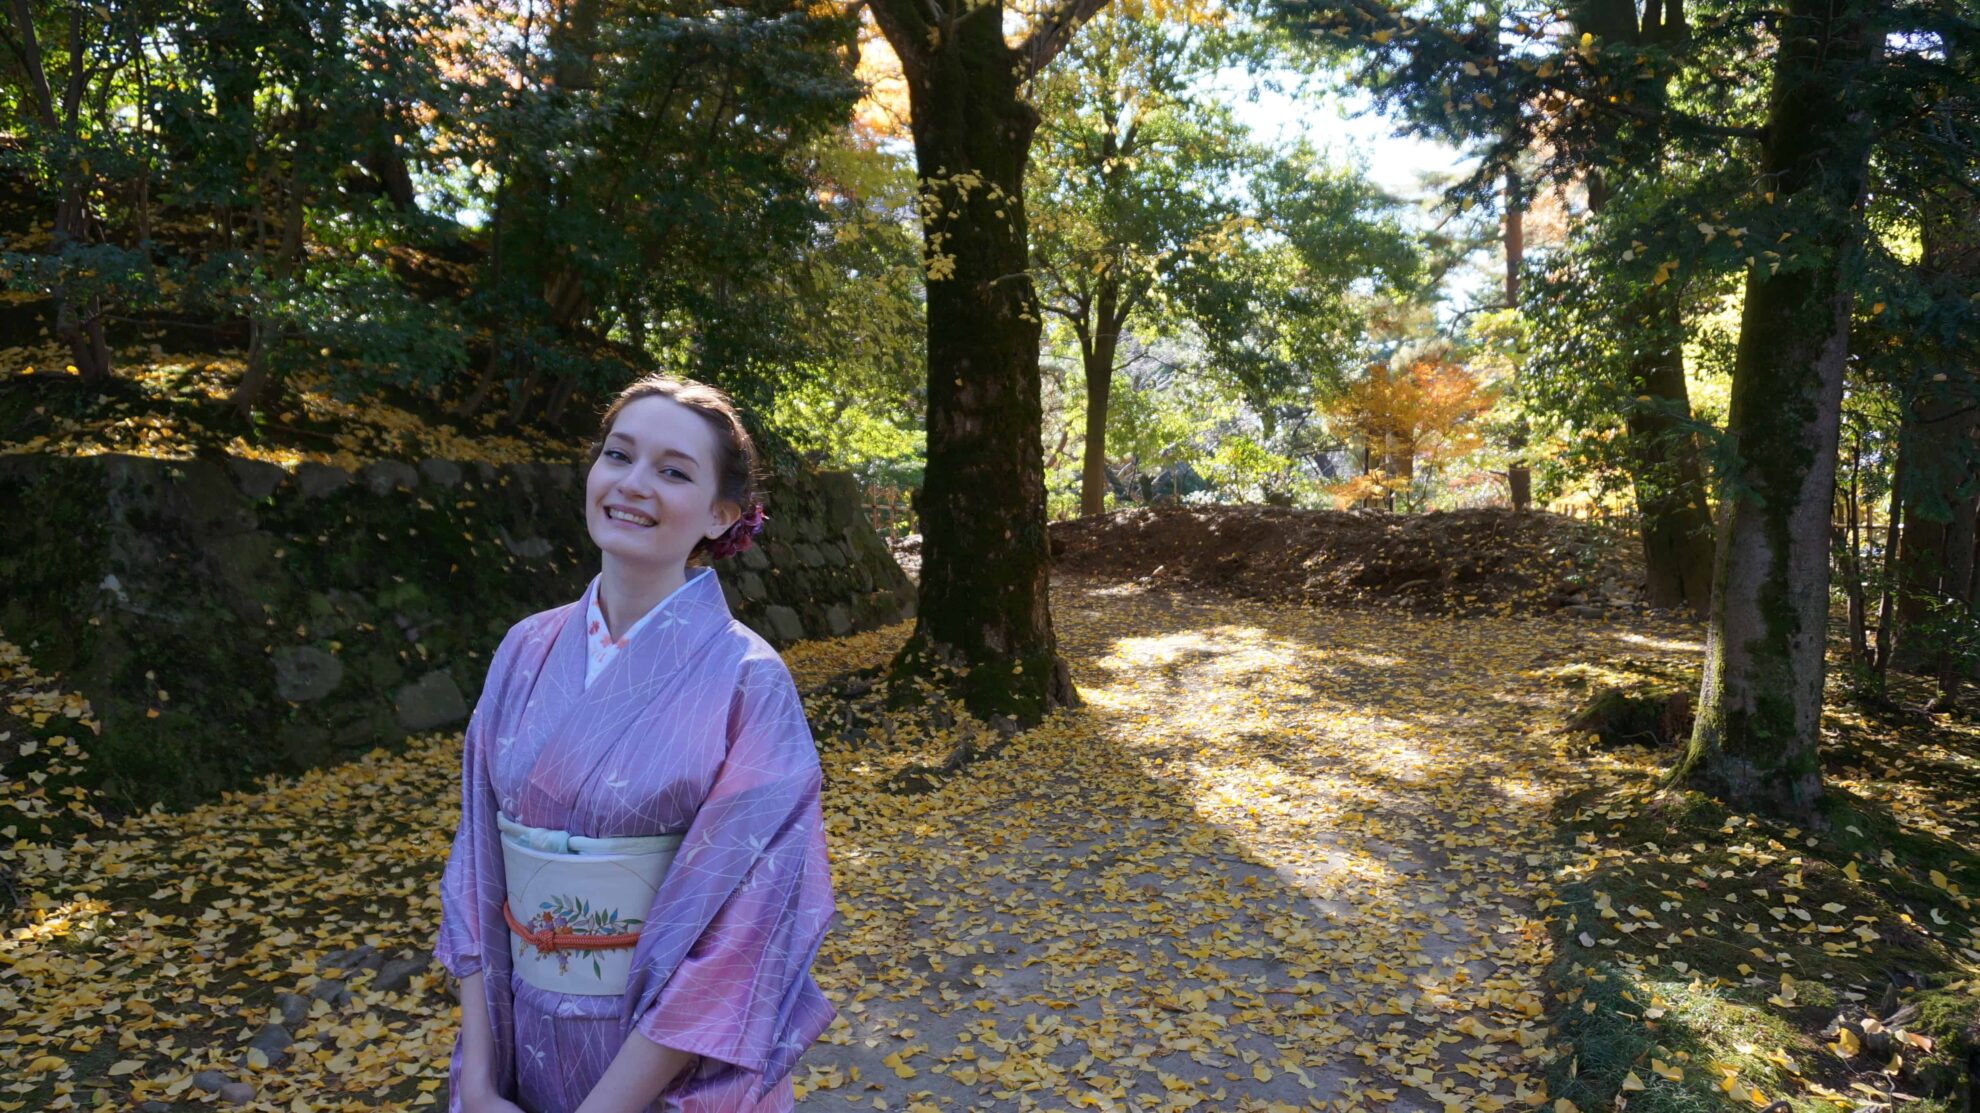 Panevėžietė Martyna Furutani vieną kartą ryžosi ir įgyvendino seną svajonę aplankyti Japoniją. Kai atėjo laikas ruoštis namo, sulaukė pasiūlymo tekėti. Dabar Martyna su japonu Hitomiu gyvenimą kuria legendomis apipintame, naktį atgyjančiame Tokijuje.